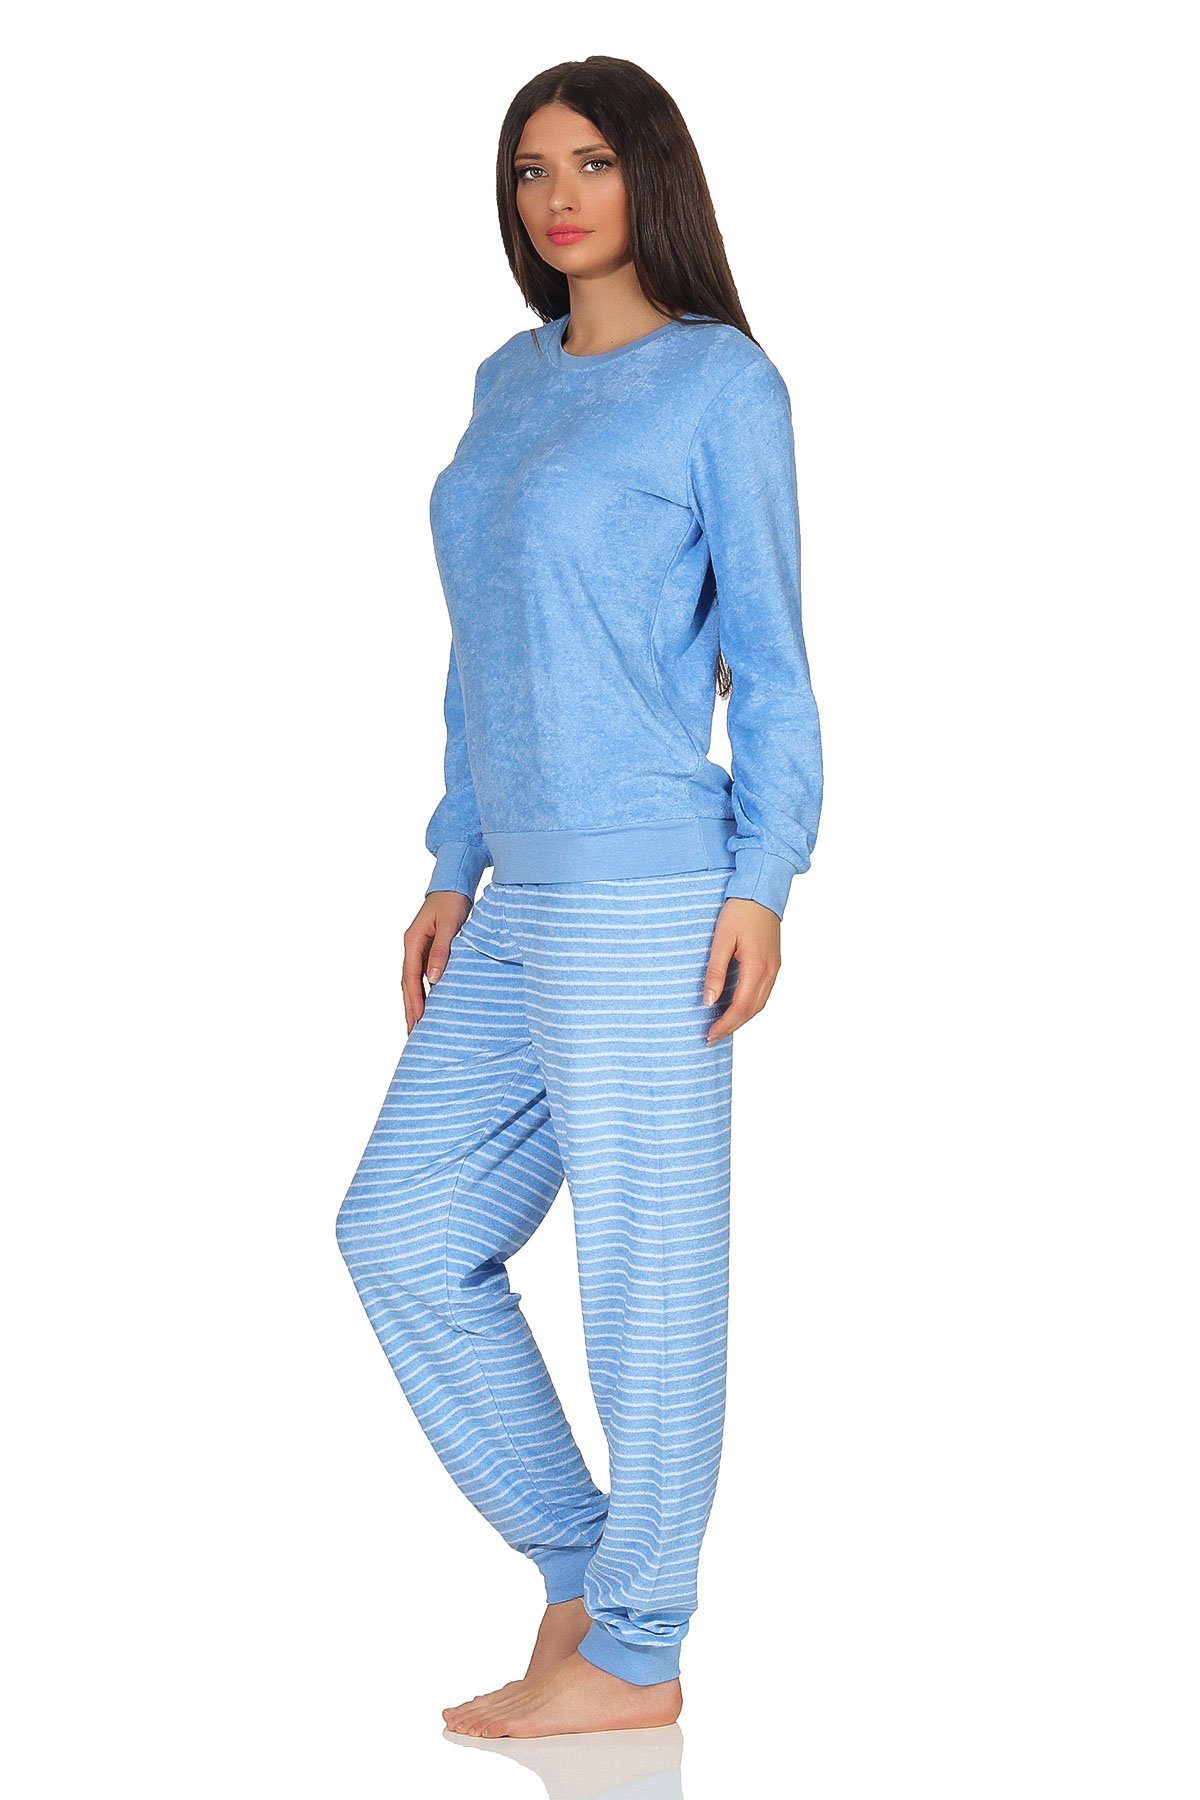 Normann Pyjama süsser Applikation Damen Schlafanzug hellblau und Frottee Bündchen mit Tier